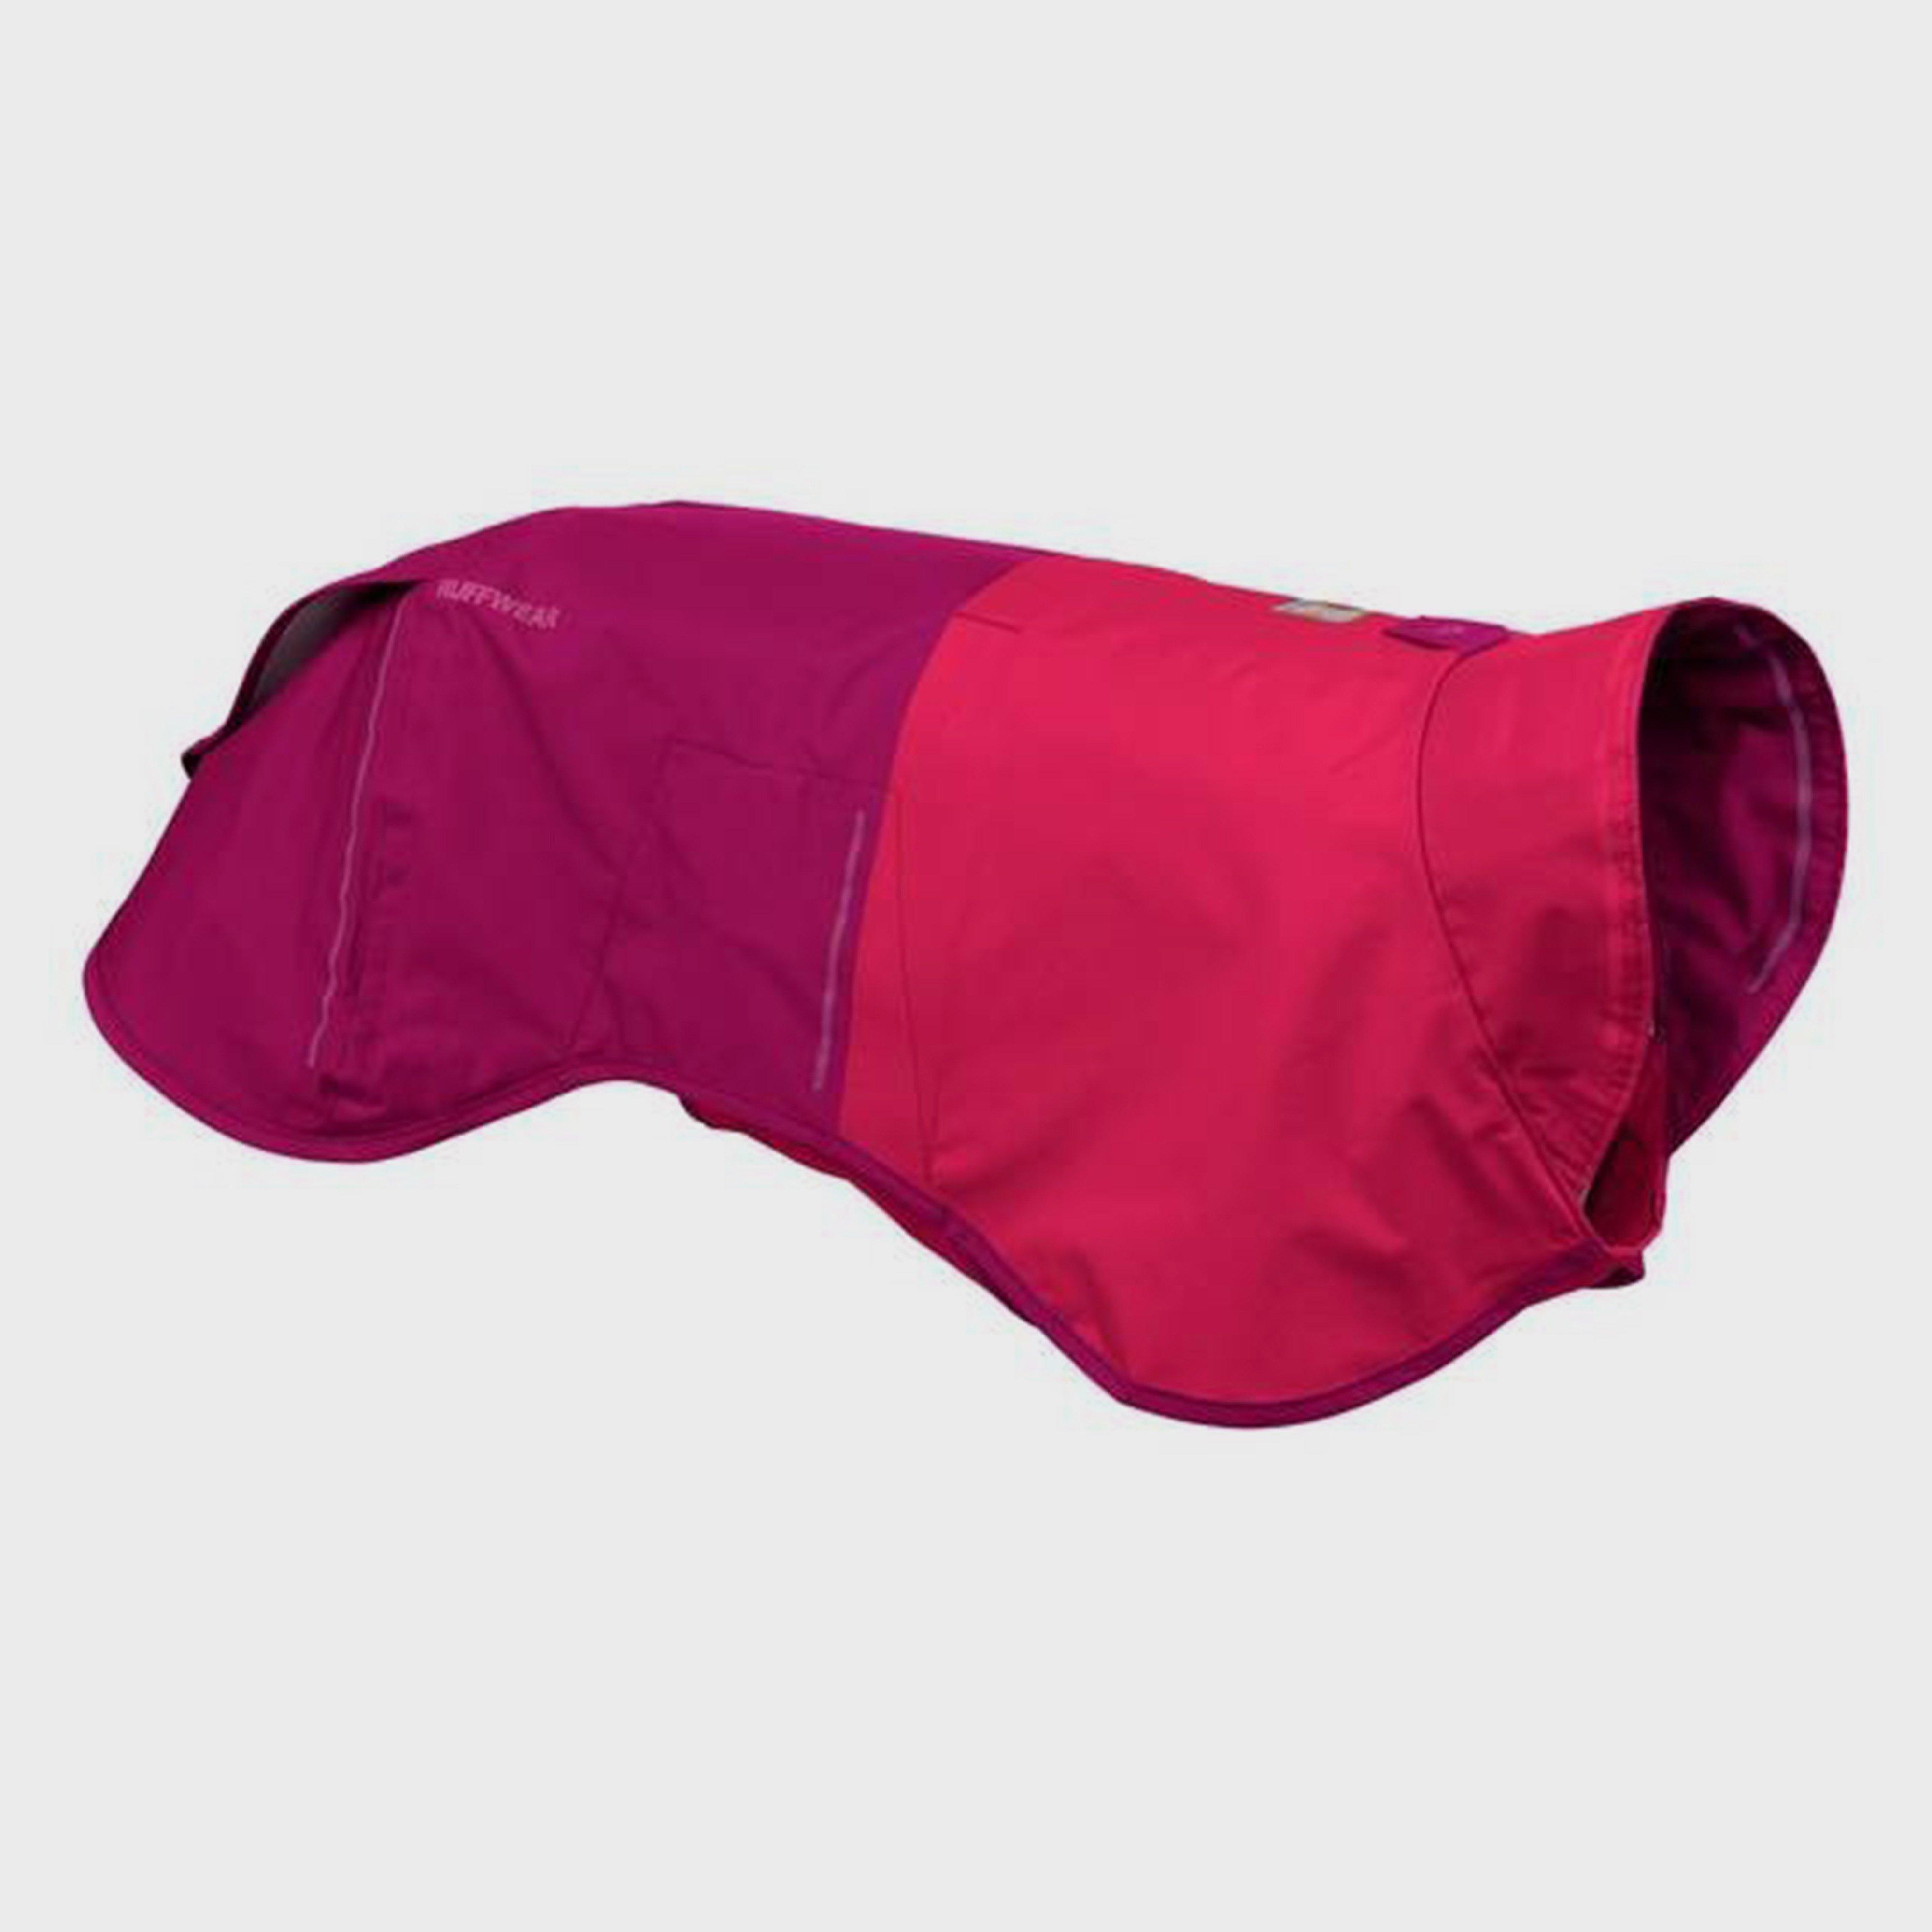 Ruffwear Ruffwear Sun Shower Dog Raincoat Hibiscus Pink - Pnk, PNK